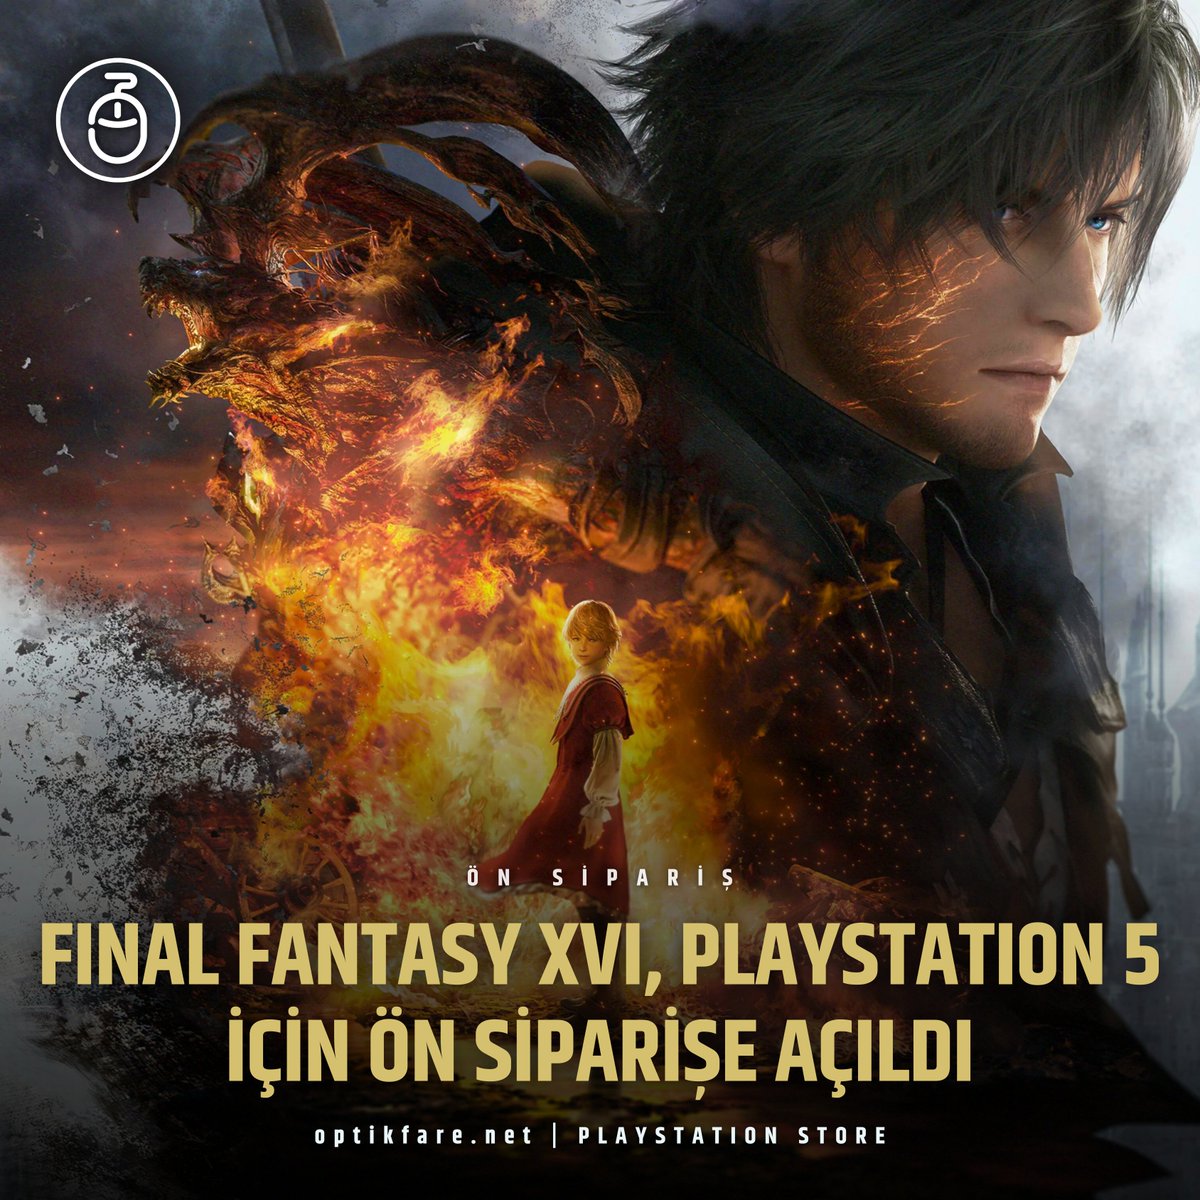 🔗 Square Enix tarafından PlayStation 5'e özel olarak geliştirilen Final Fantasy 16, dünya genelinde ön siparişe açıldı. 

🛒 Oyunun standart sürümü, PlayStation Store'da 799 TL fiyatla satışa çıktı ve bu, güncel kura göre yaklaşık 33$'a denk geliyor.